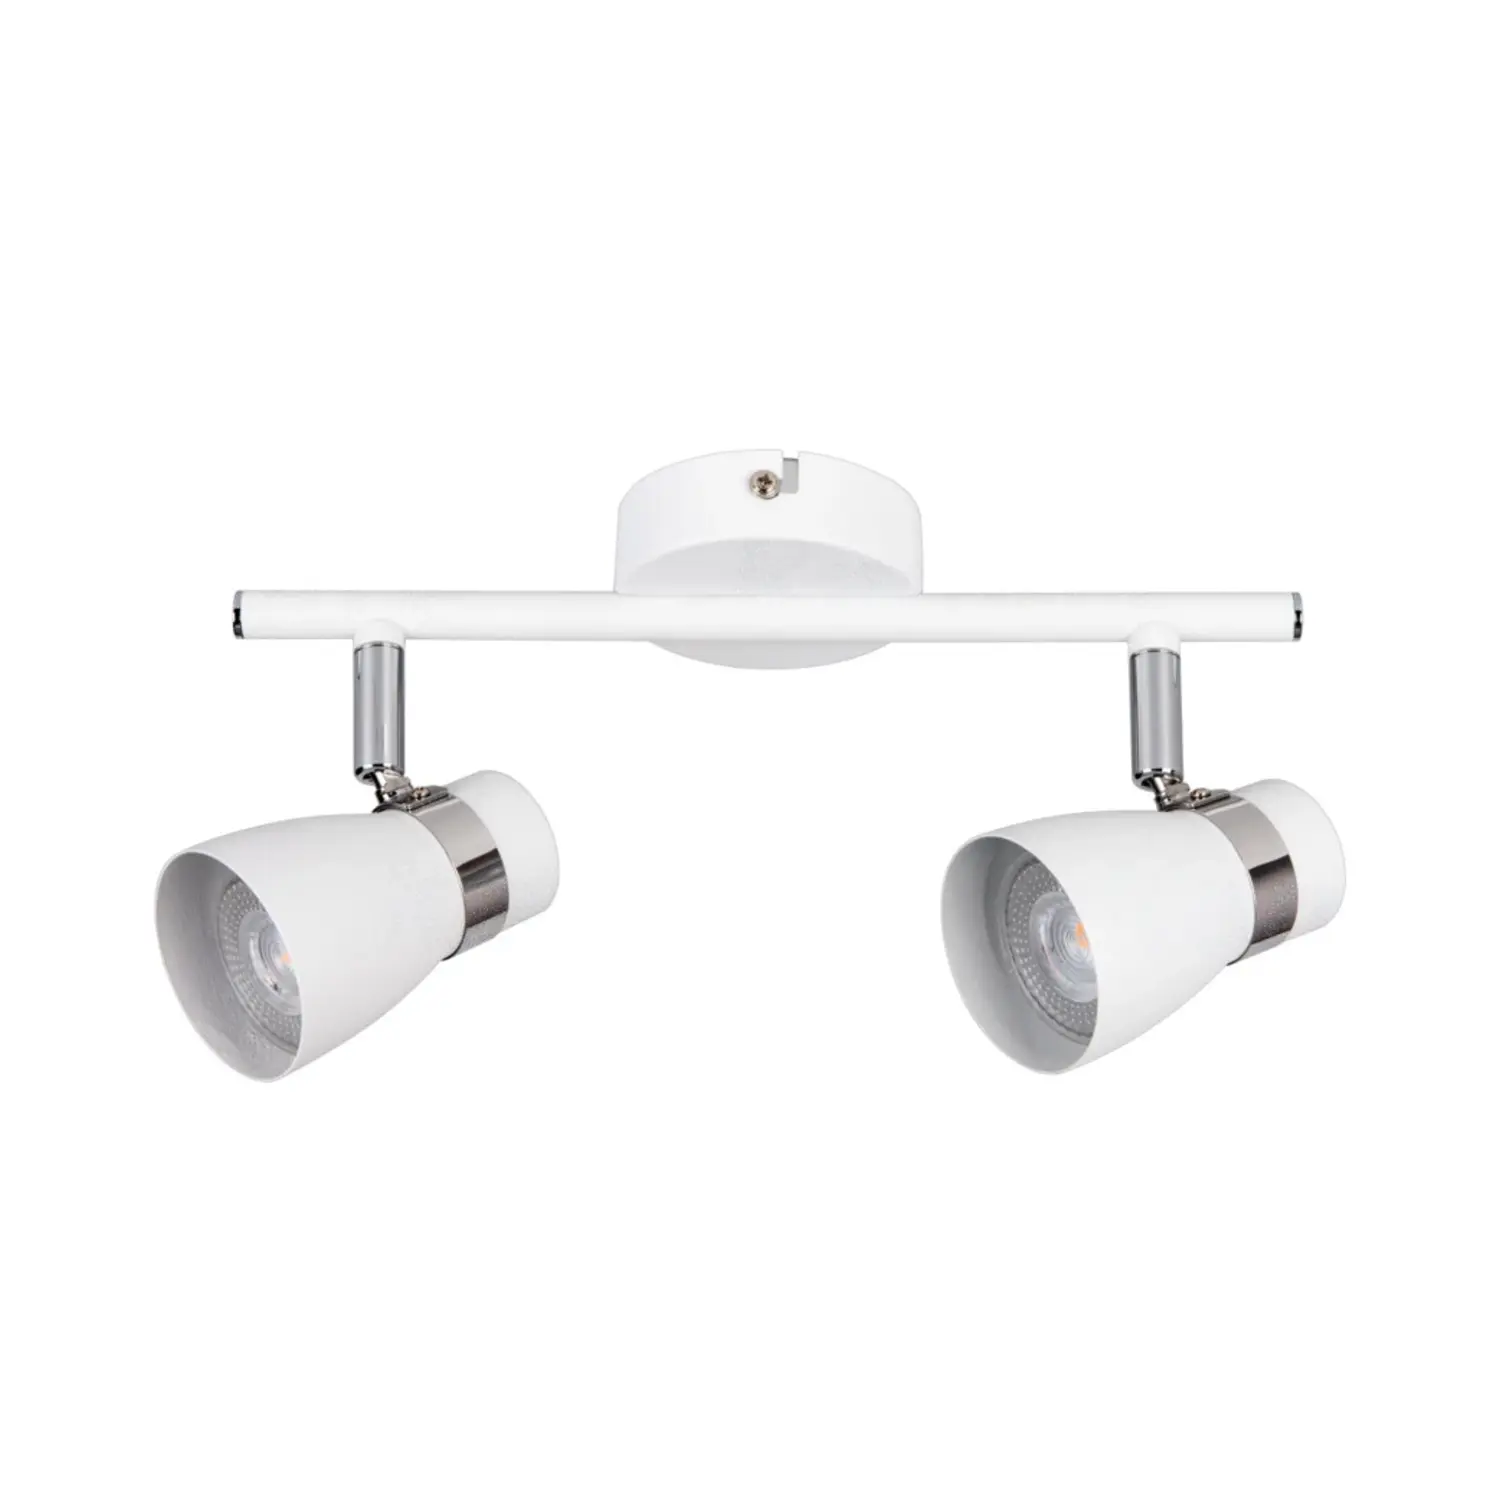 immagine del prodotto lampada faretto parete soffitto enali gu10 bianco 2 luci orientabile